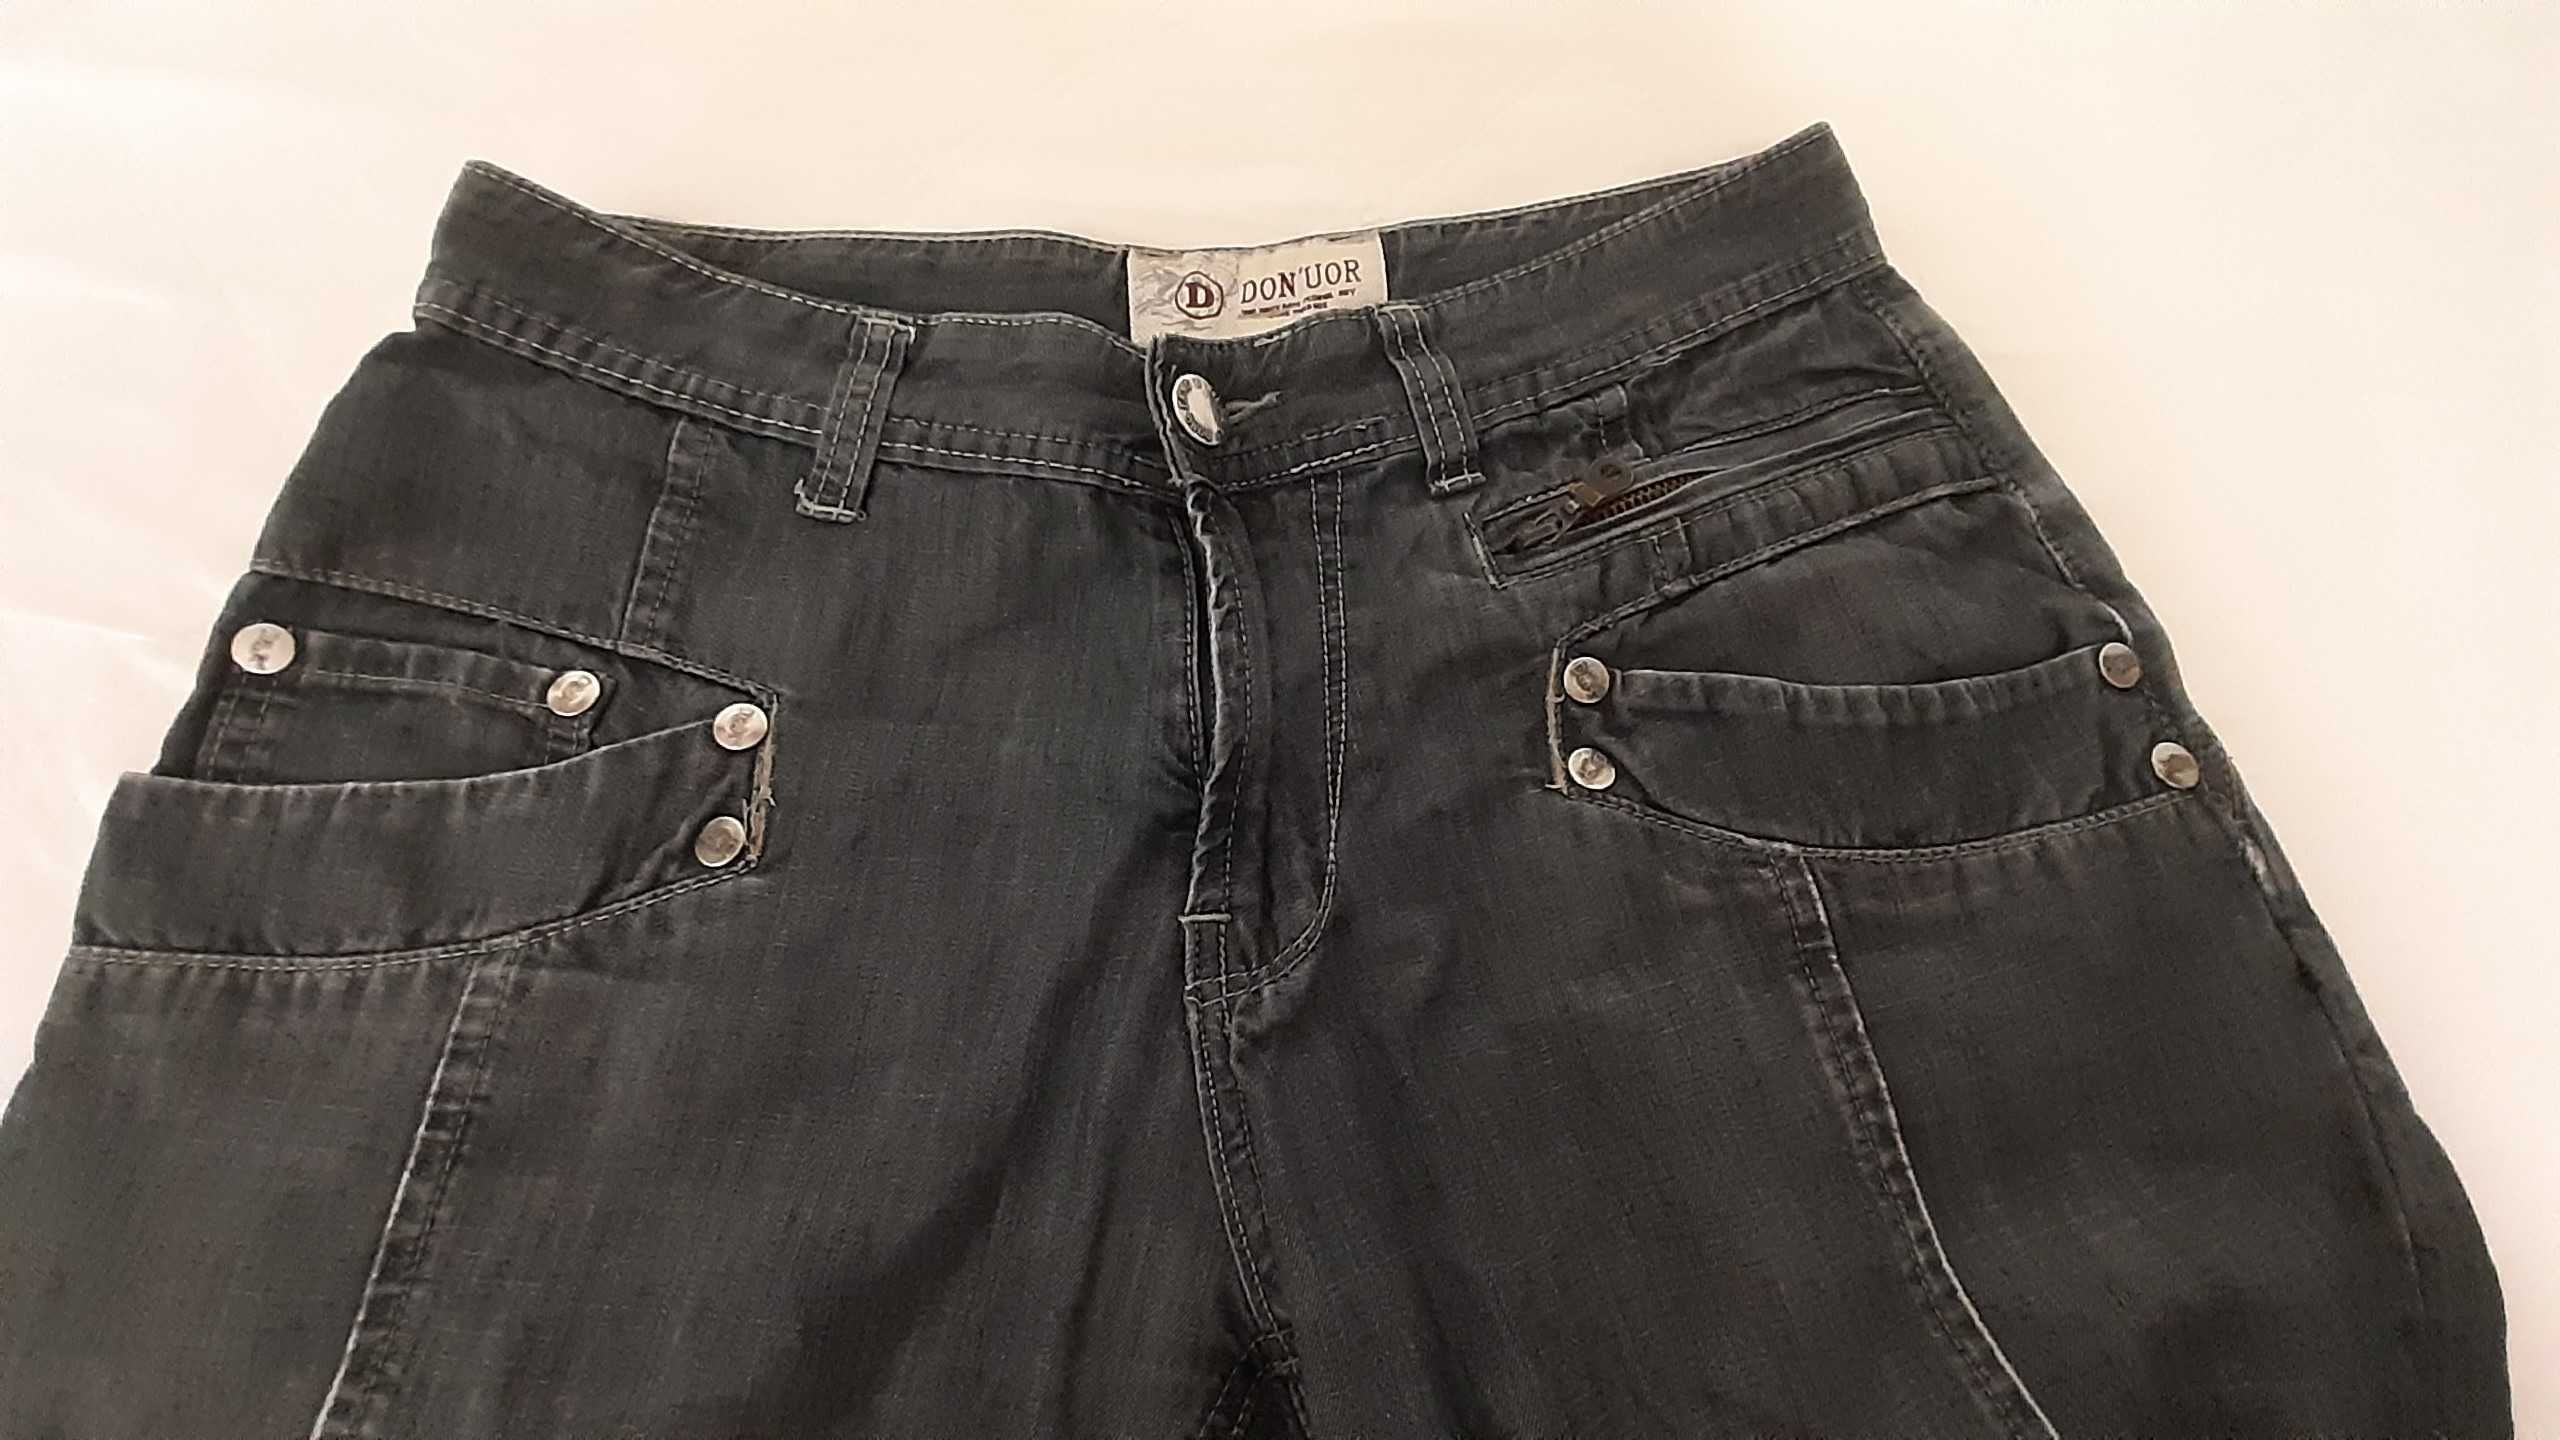 Krótkie spodenki męskie jeansowe szare - rozmiar 30 - S